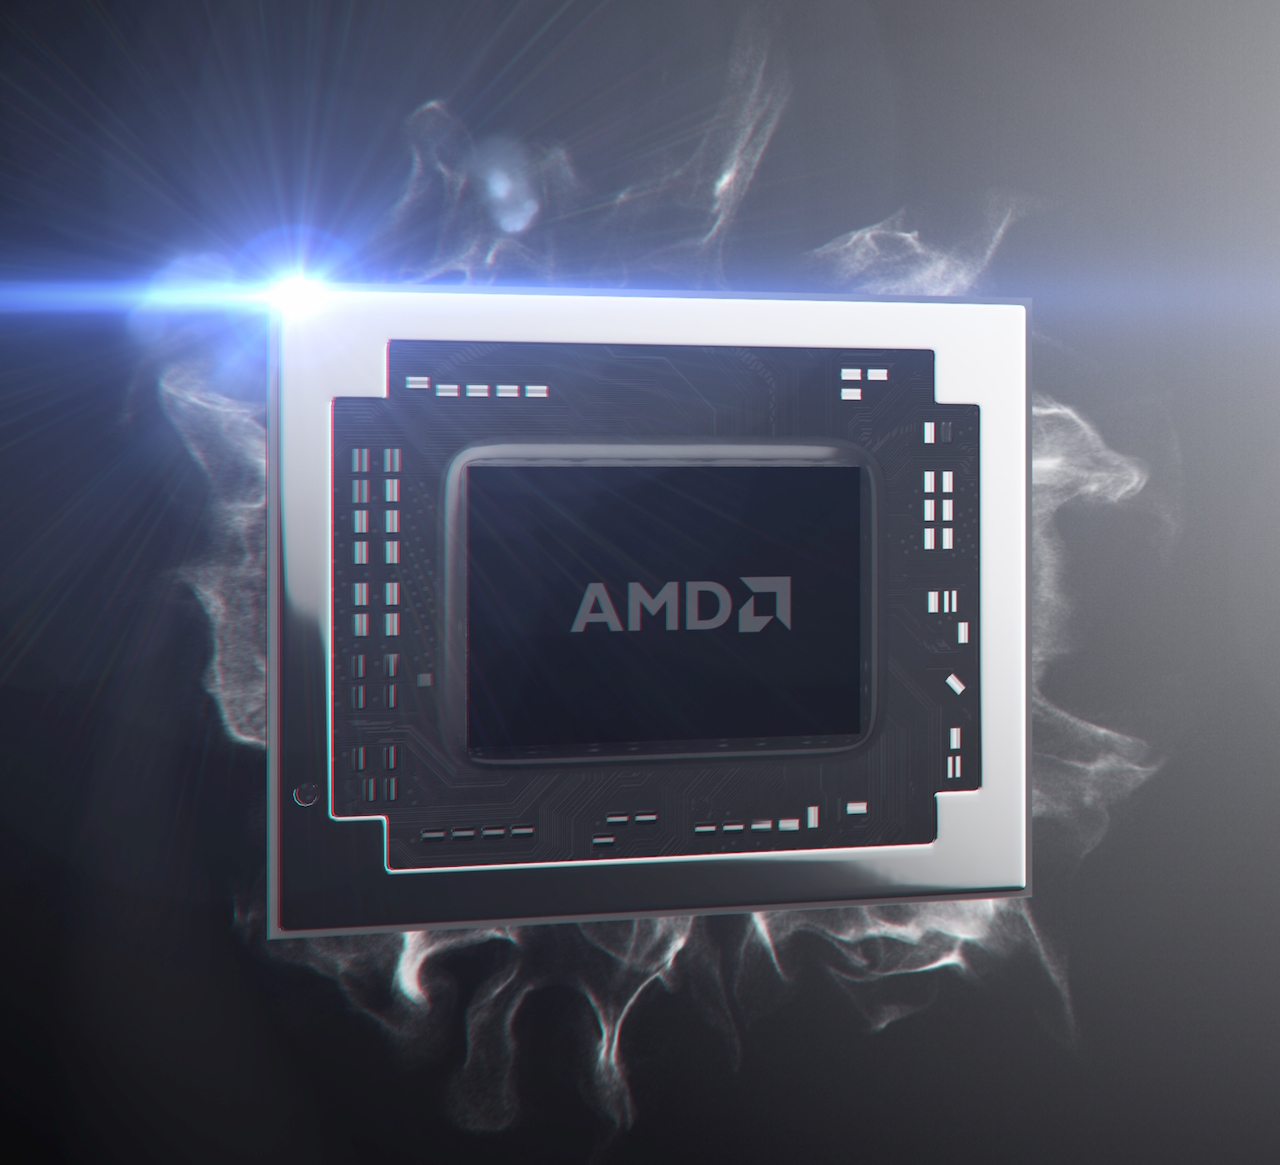 AMD Pro A6-8500B Business-Notebook-Processor - NotebookCheck.net Tech